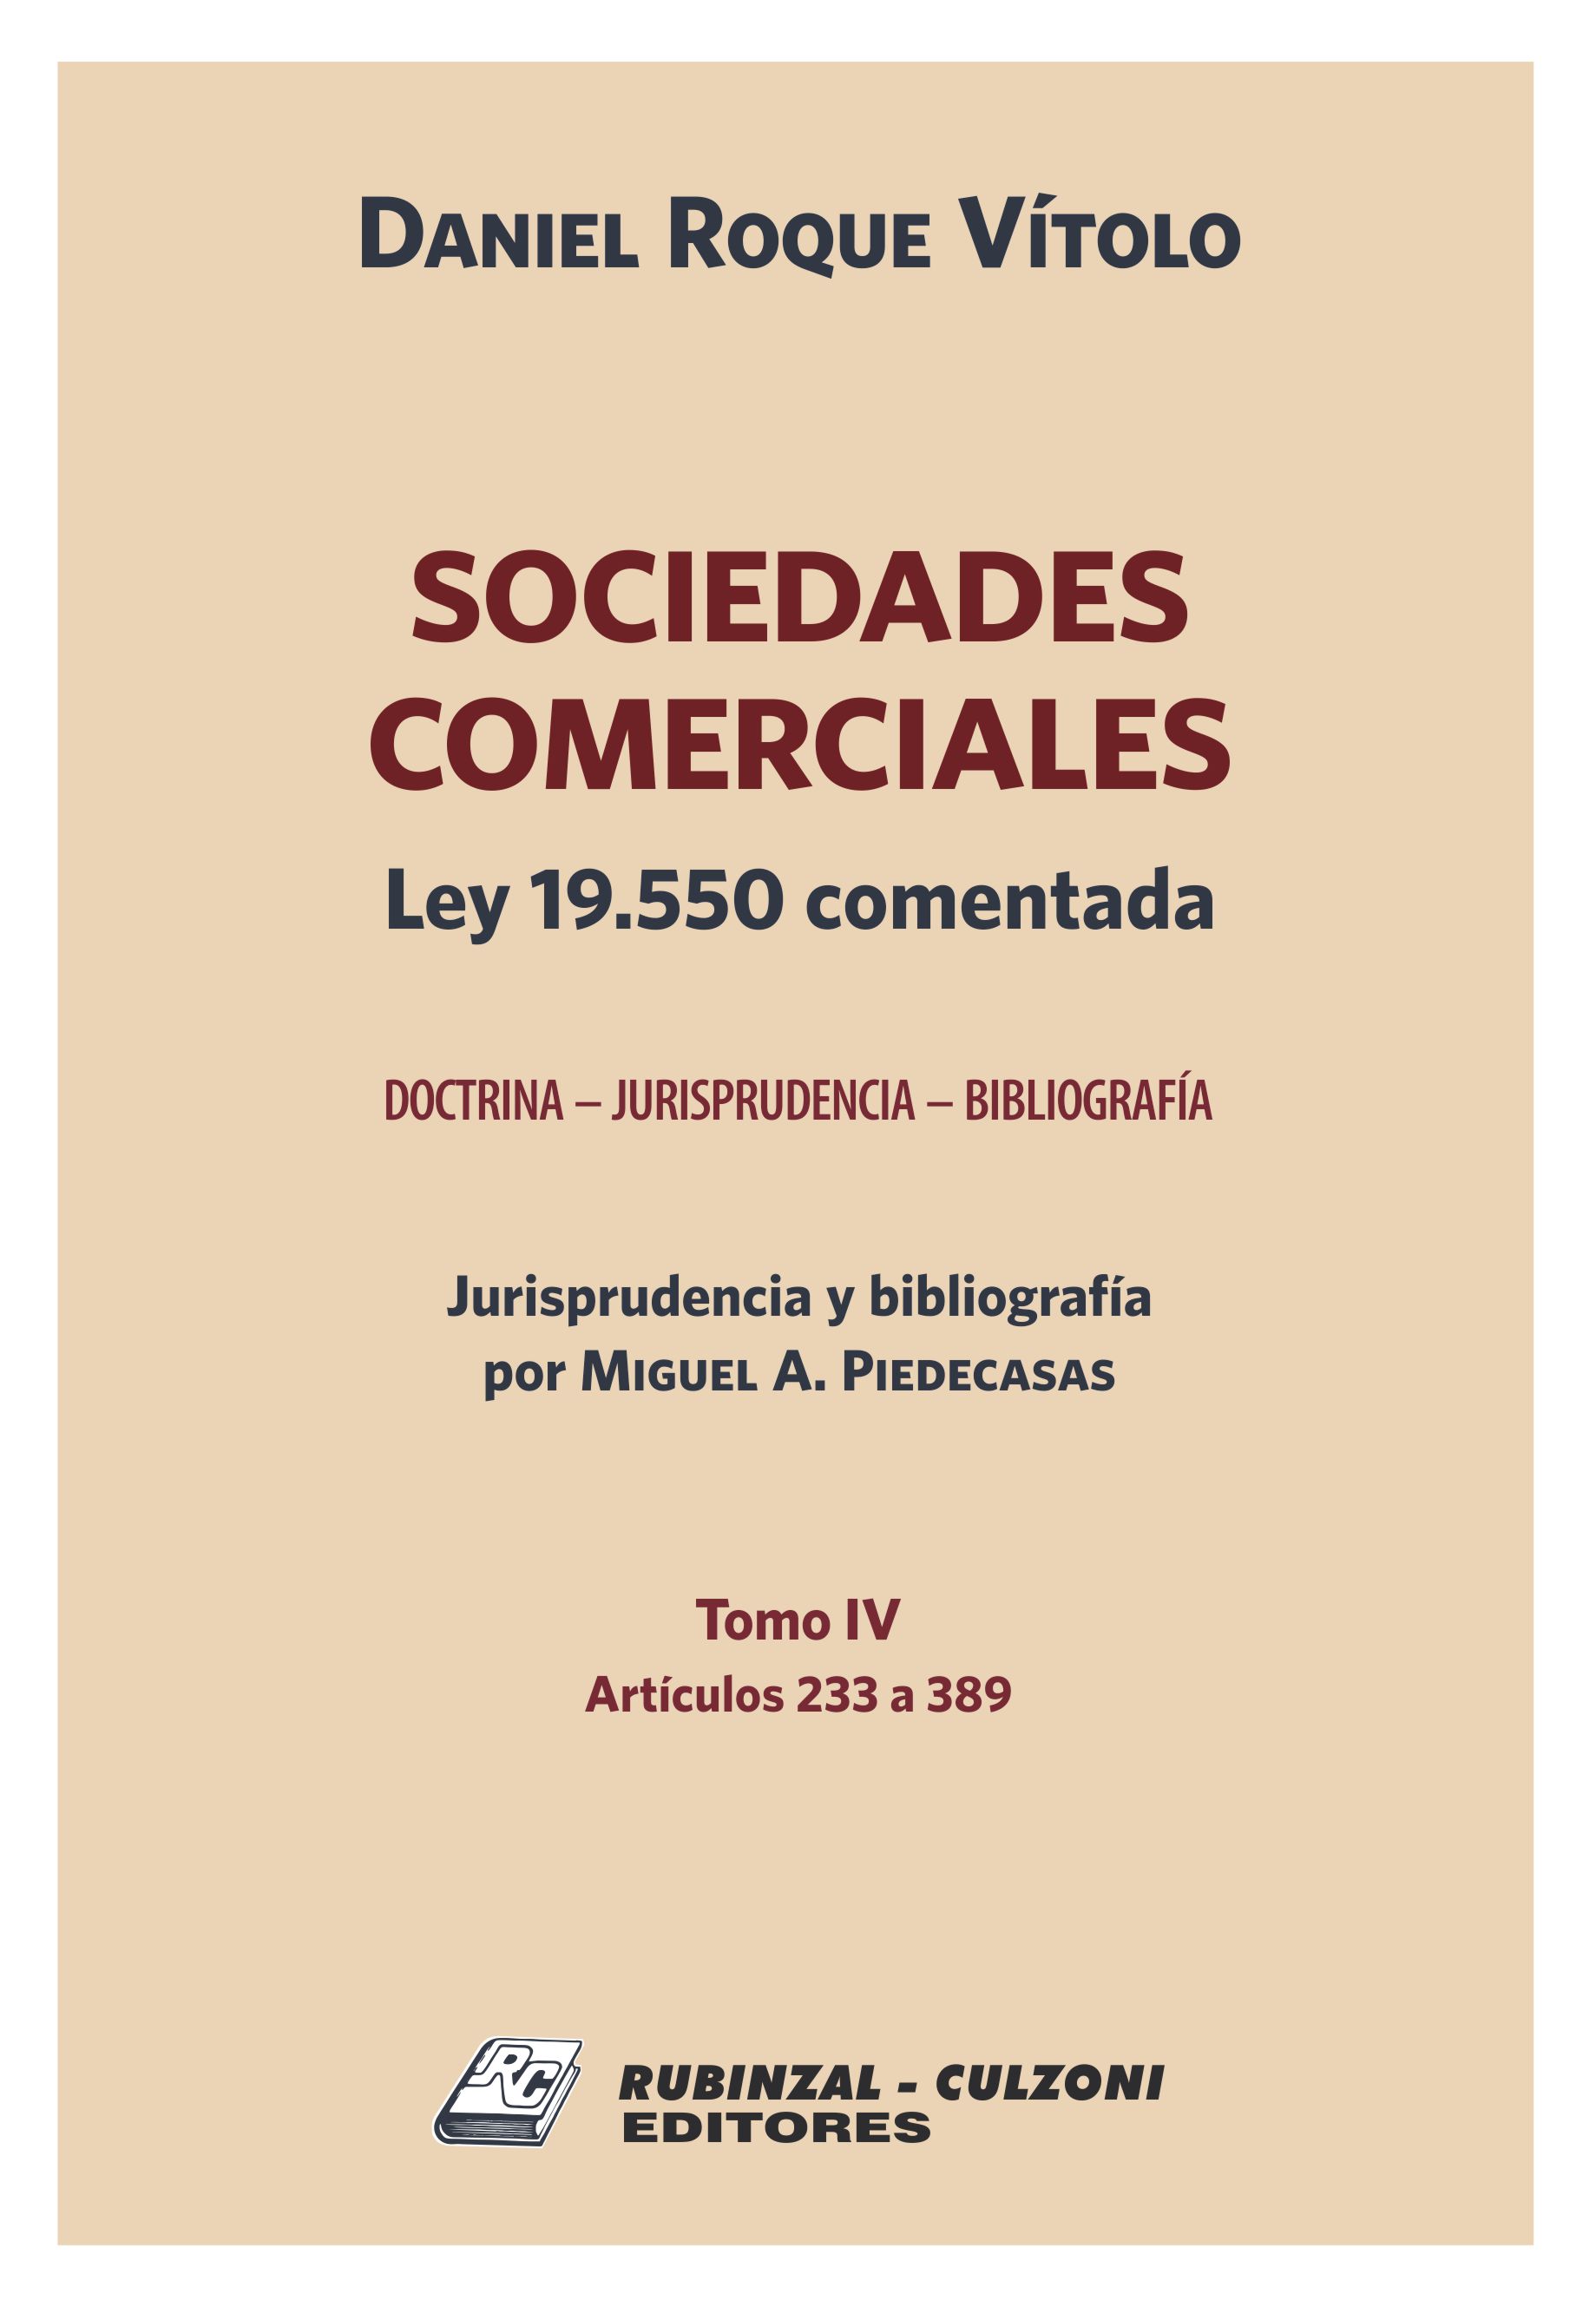 Sociedades Comerciales. Ley 19.550 comentada (Doctrina - Jurisprudencia - Bibliografía). - Tomo IV (Artículos 233 a 389).